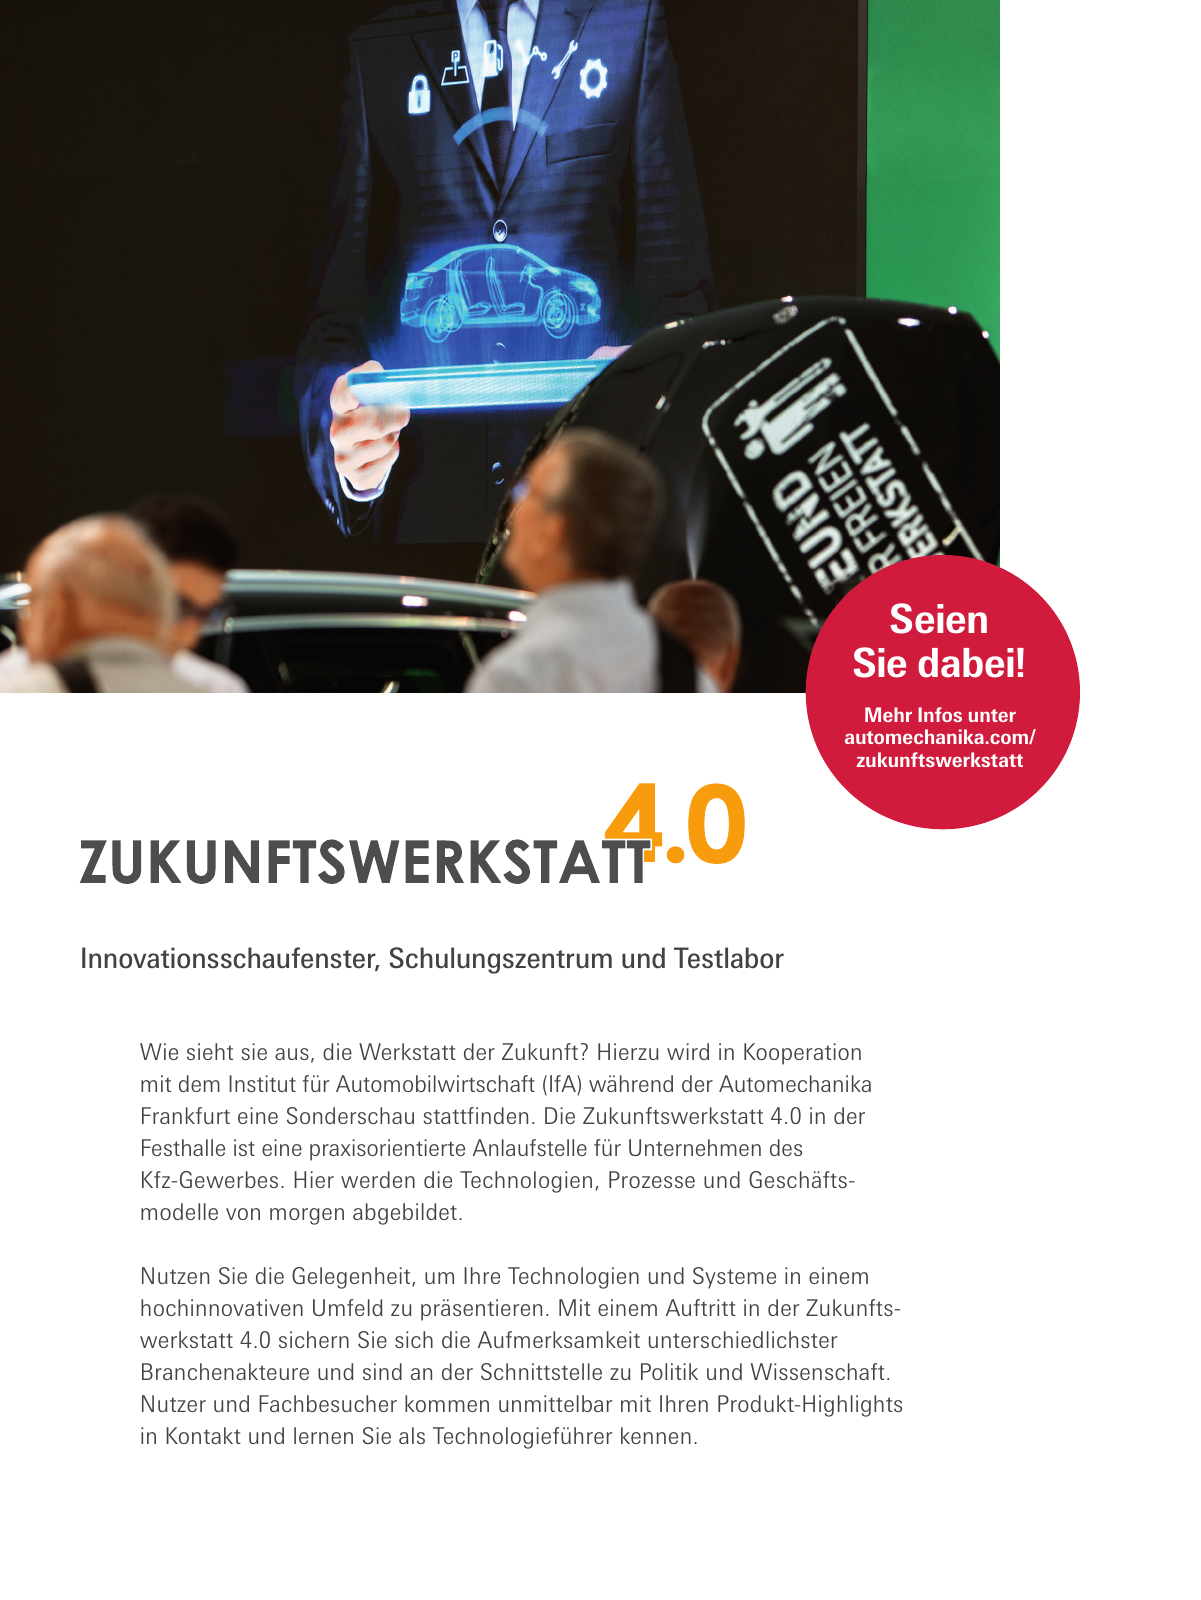 Vorschau Automechanika 2020 Broschüre Festhalle Werkstatt 4.0 Seite 2